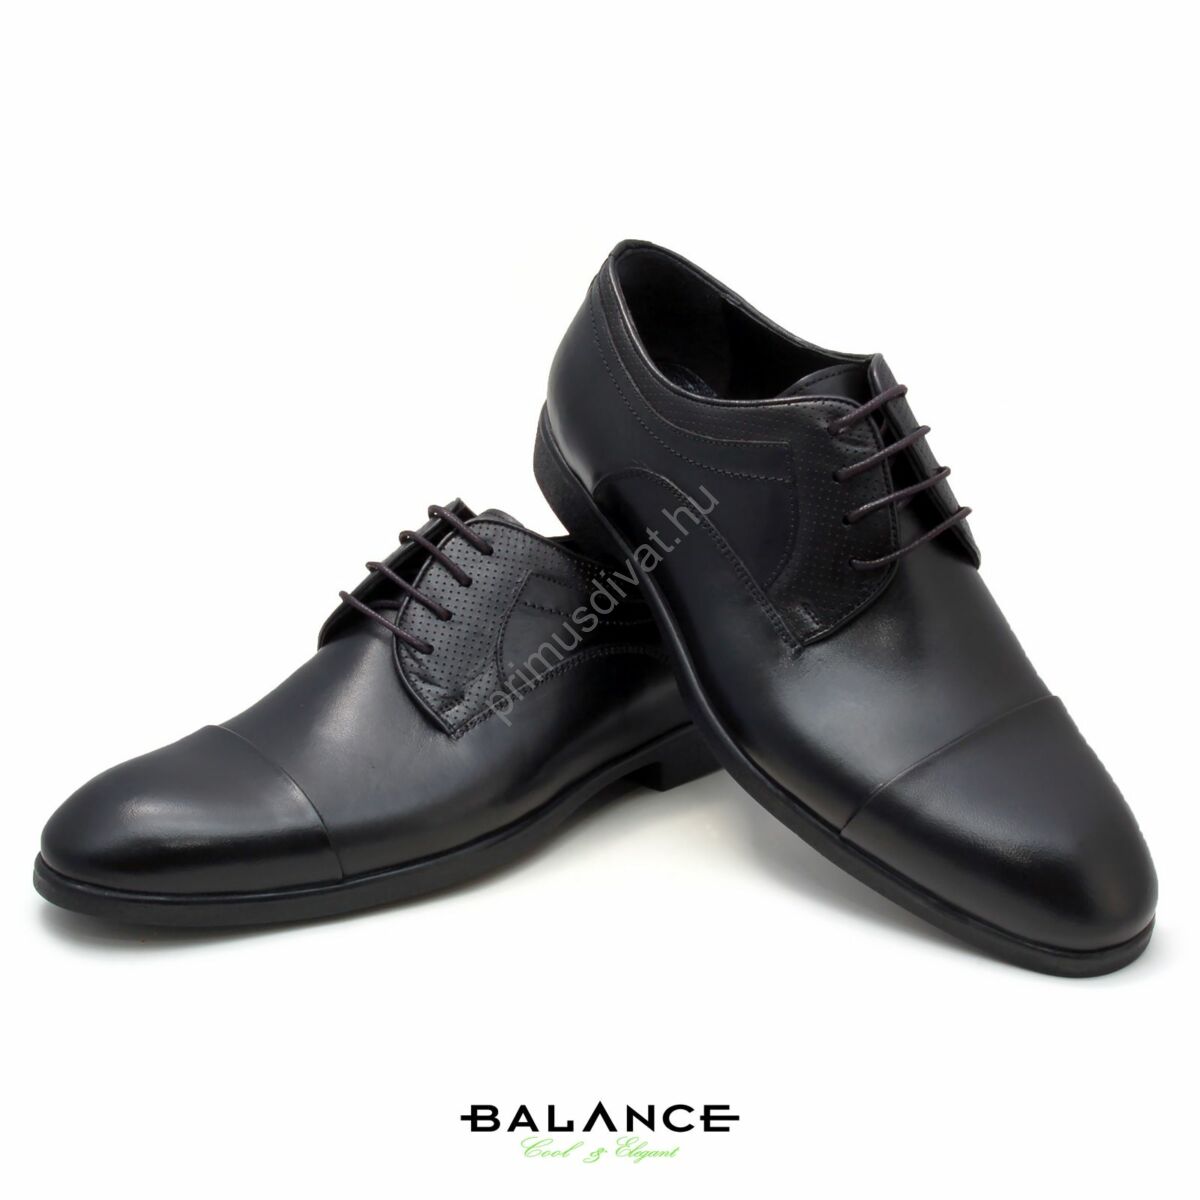 Balance fűzős fekete bőr alkalmi férfi cipő, díszítő tűzésekkel